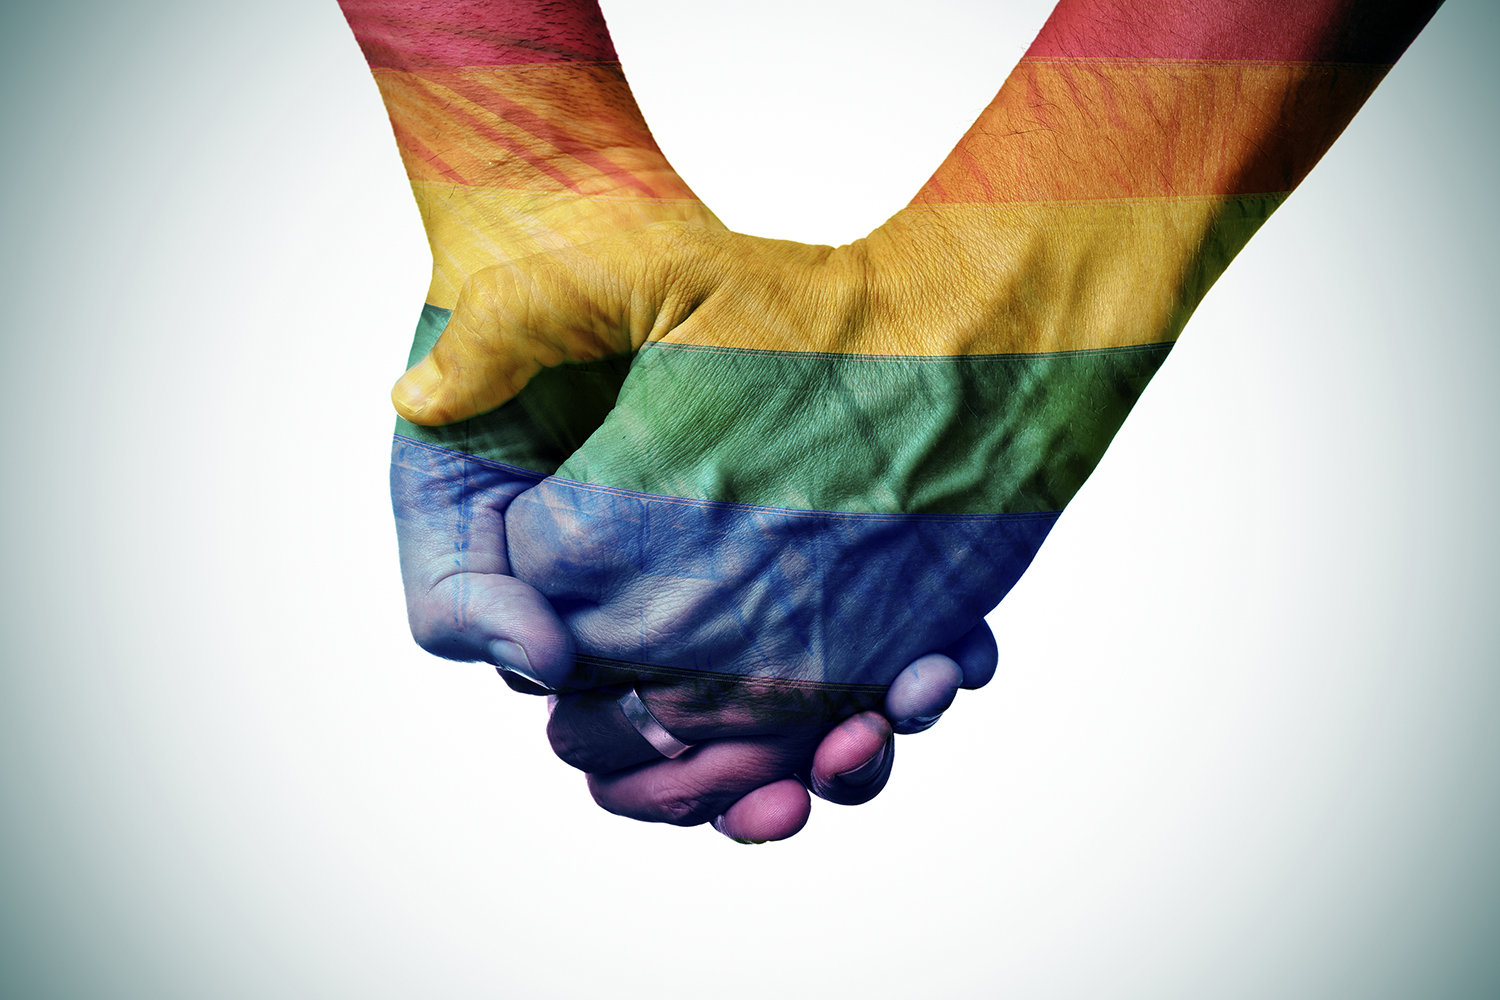 Holding hands coloured like a rainbow flag